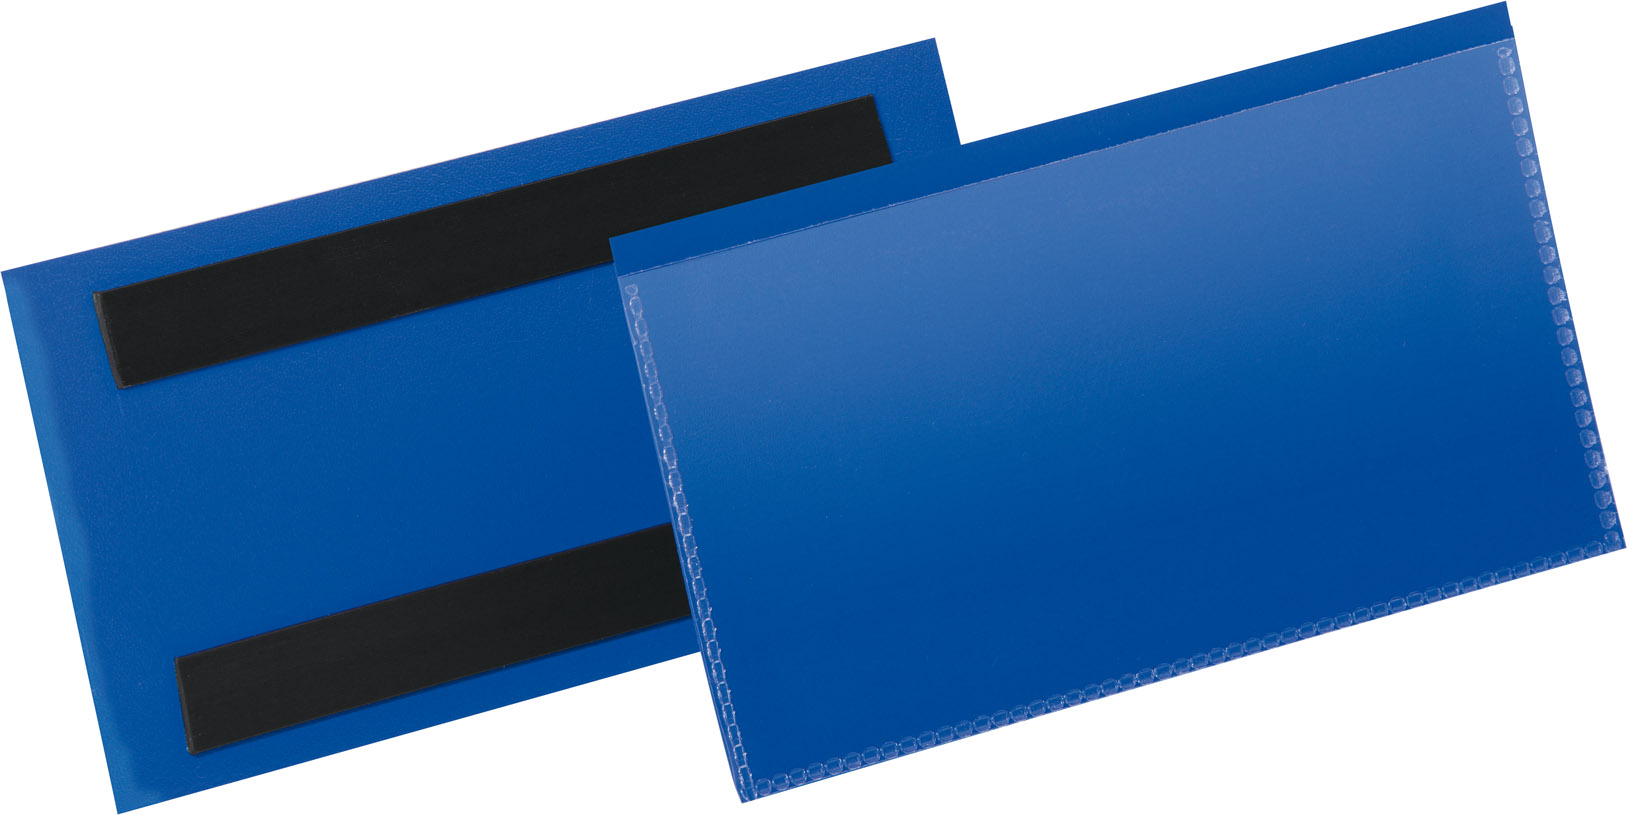 Picture of Etikettentasche B150xH67 mm blau, magnetisch VE 50 Stück